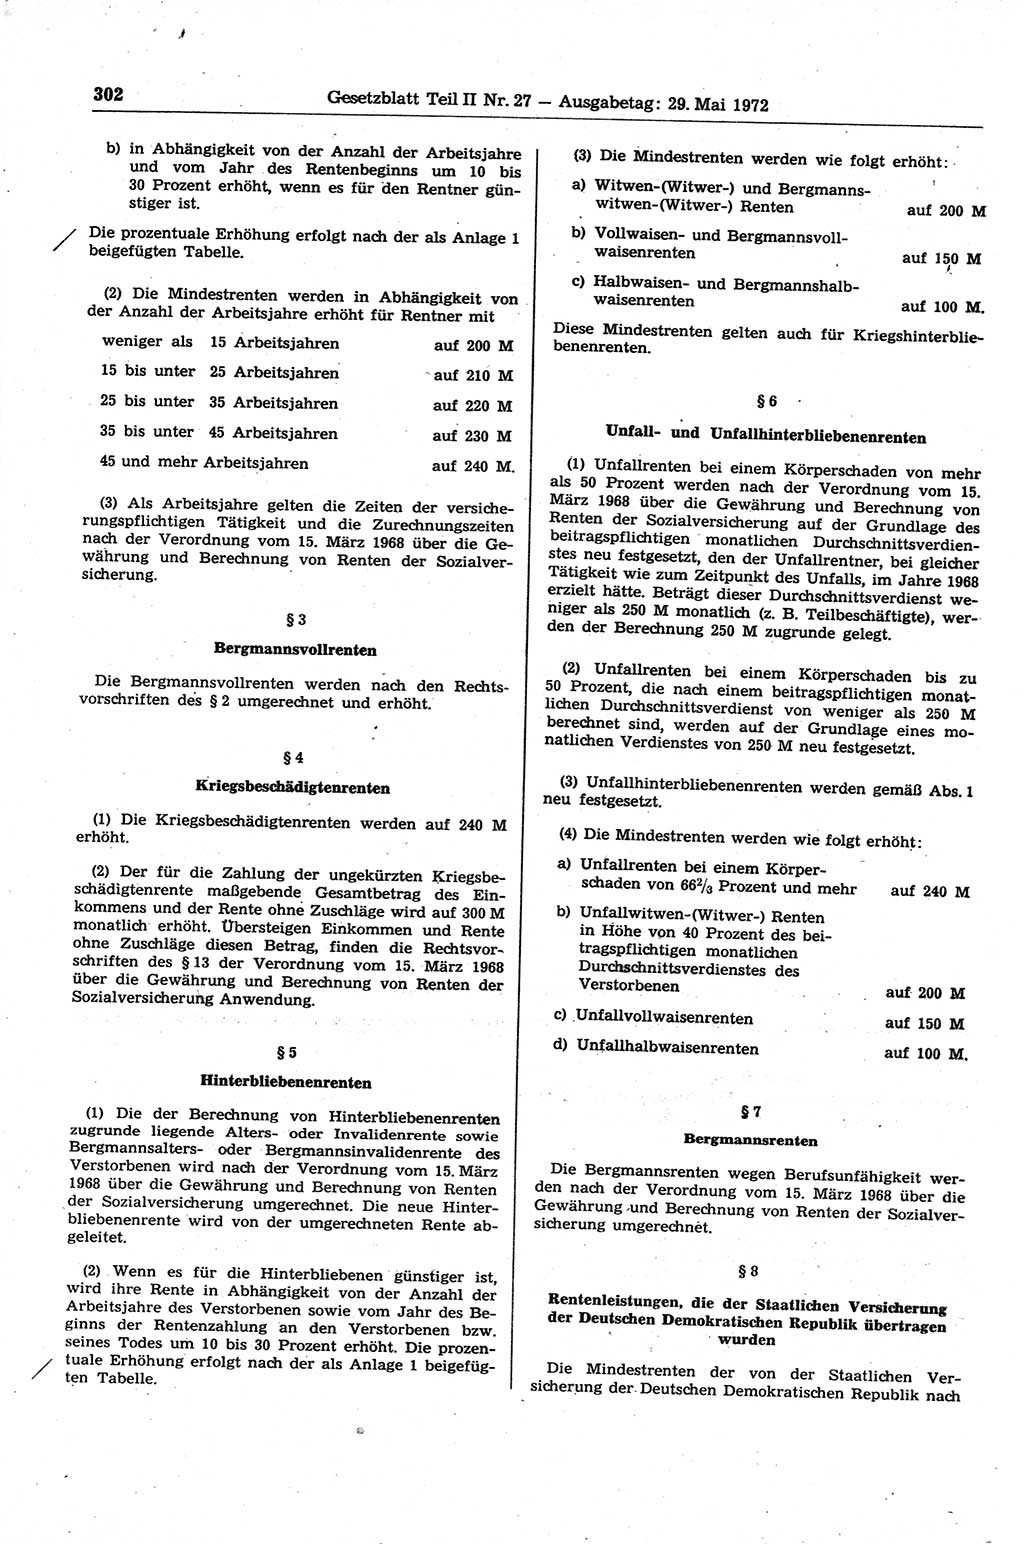 Gesetzblatt (GBl.) der Deutschen Demokratischen Republik (DDR) Teil ⅠⅠ 1972, Seite 302 (GBl. DDR ⅠⅠ 1972, S. 302)